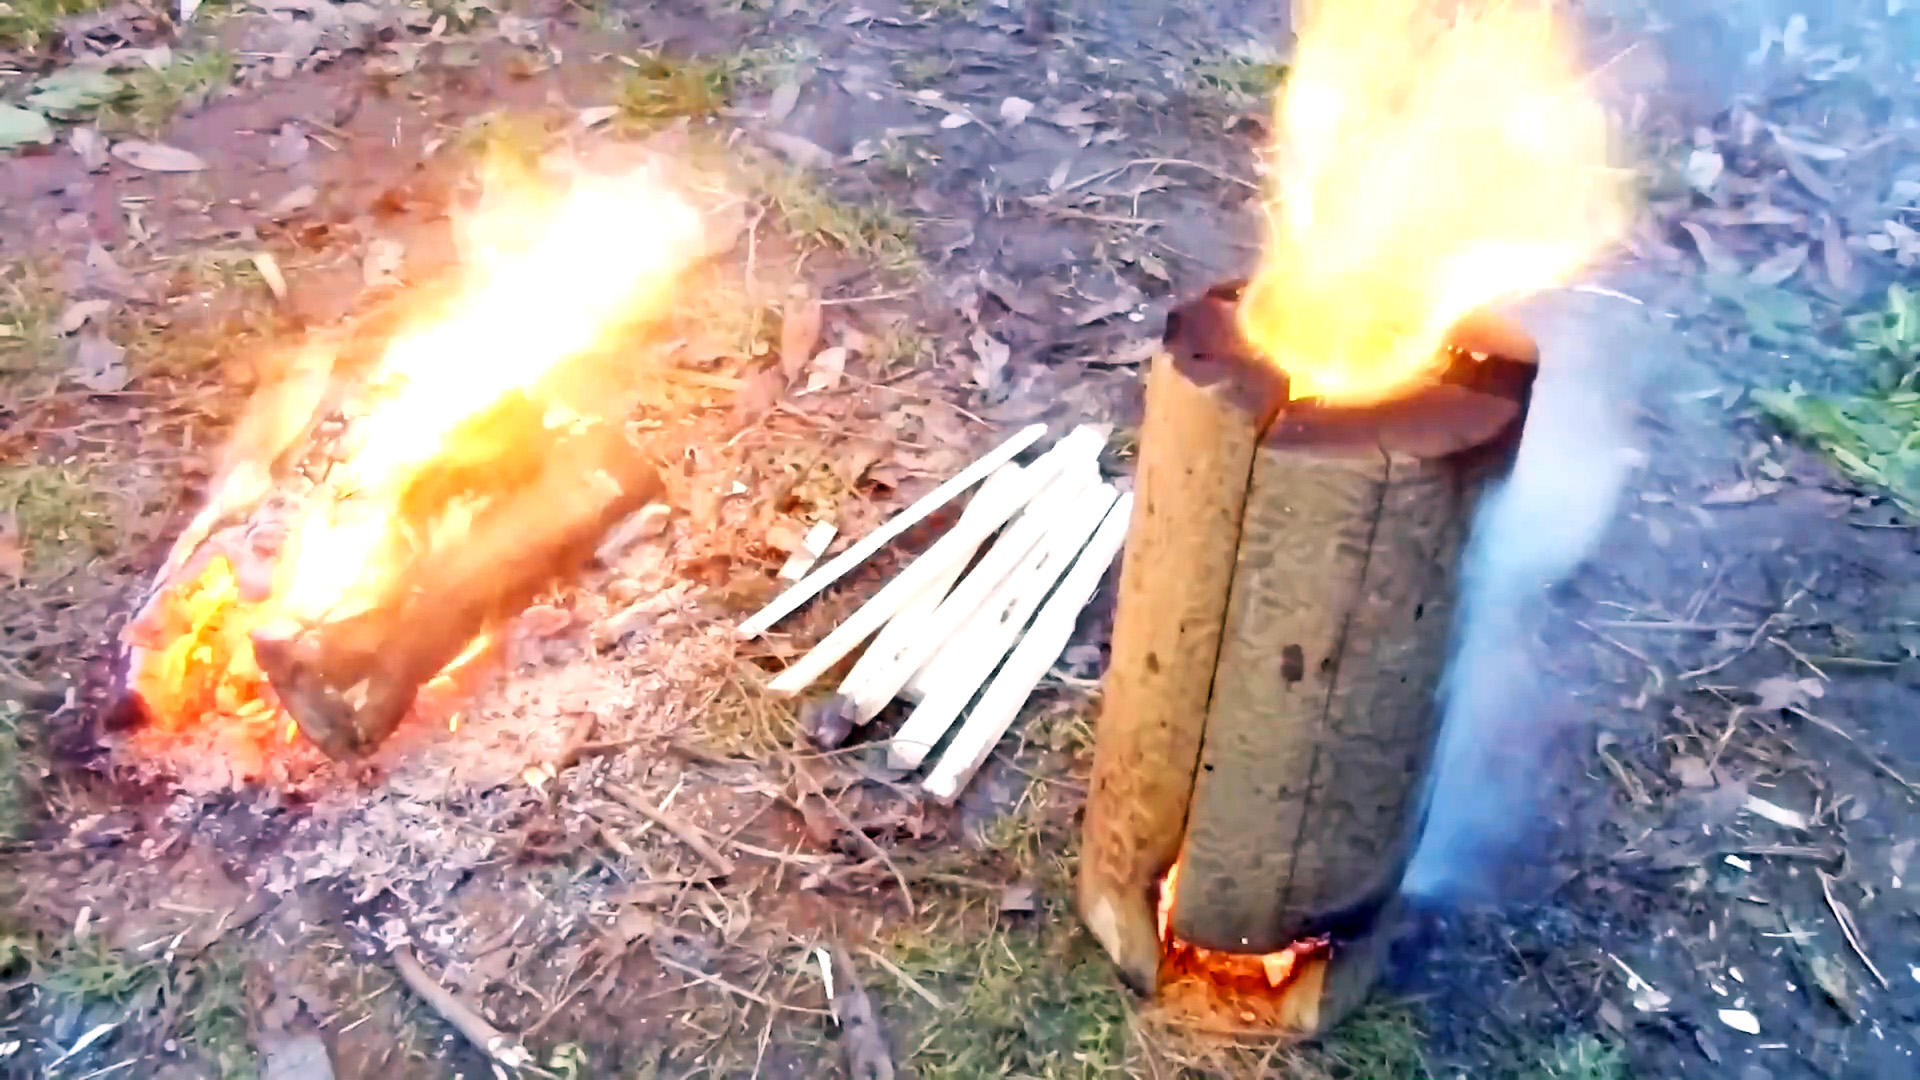 Как сделать печь по типу «финской свечи» с регулировкой пламени